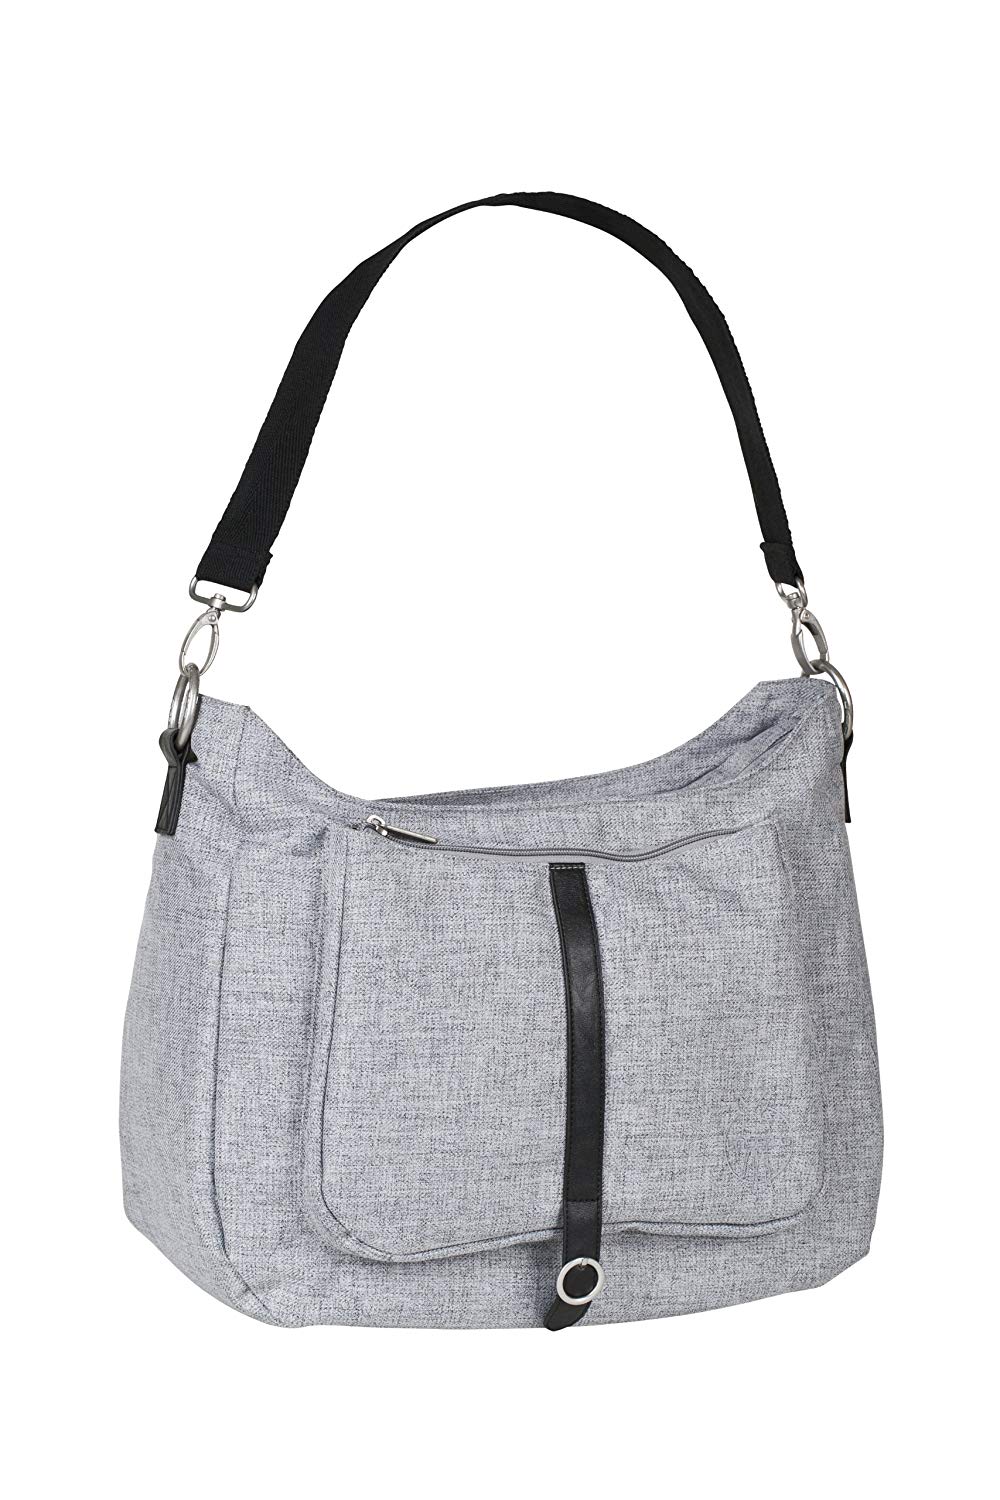 Lässig Green Label Shoulder Bag Changing Bag with Adjustable Shoulder Strap Including Changing Accessories Black Melange